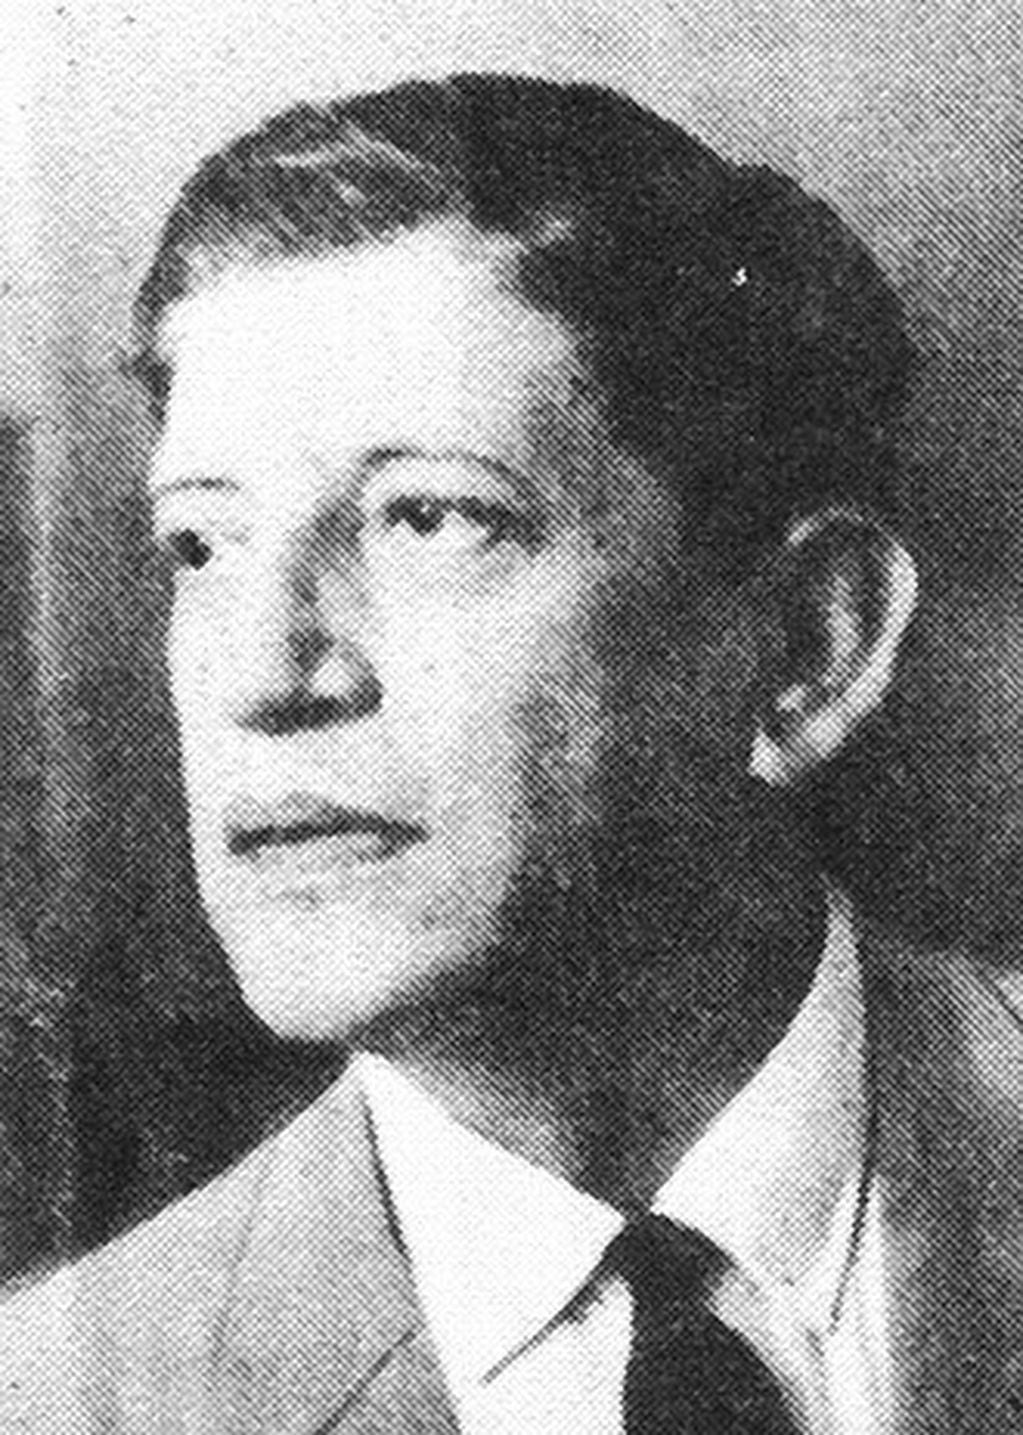 Antonio Esteban Agüero